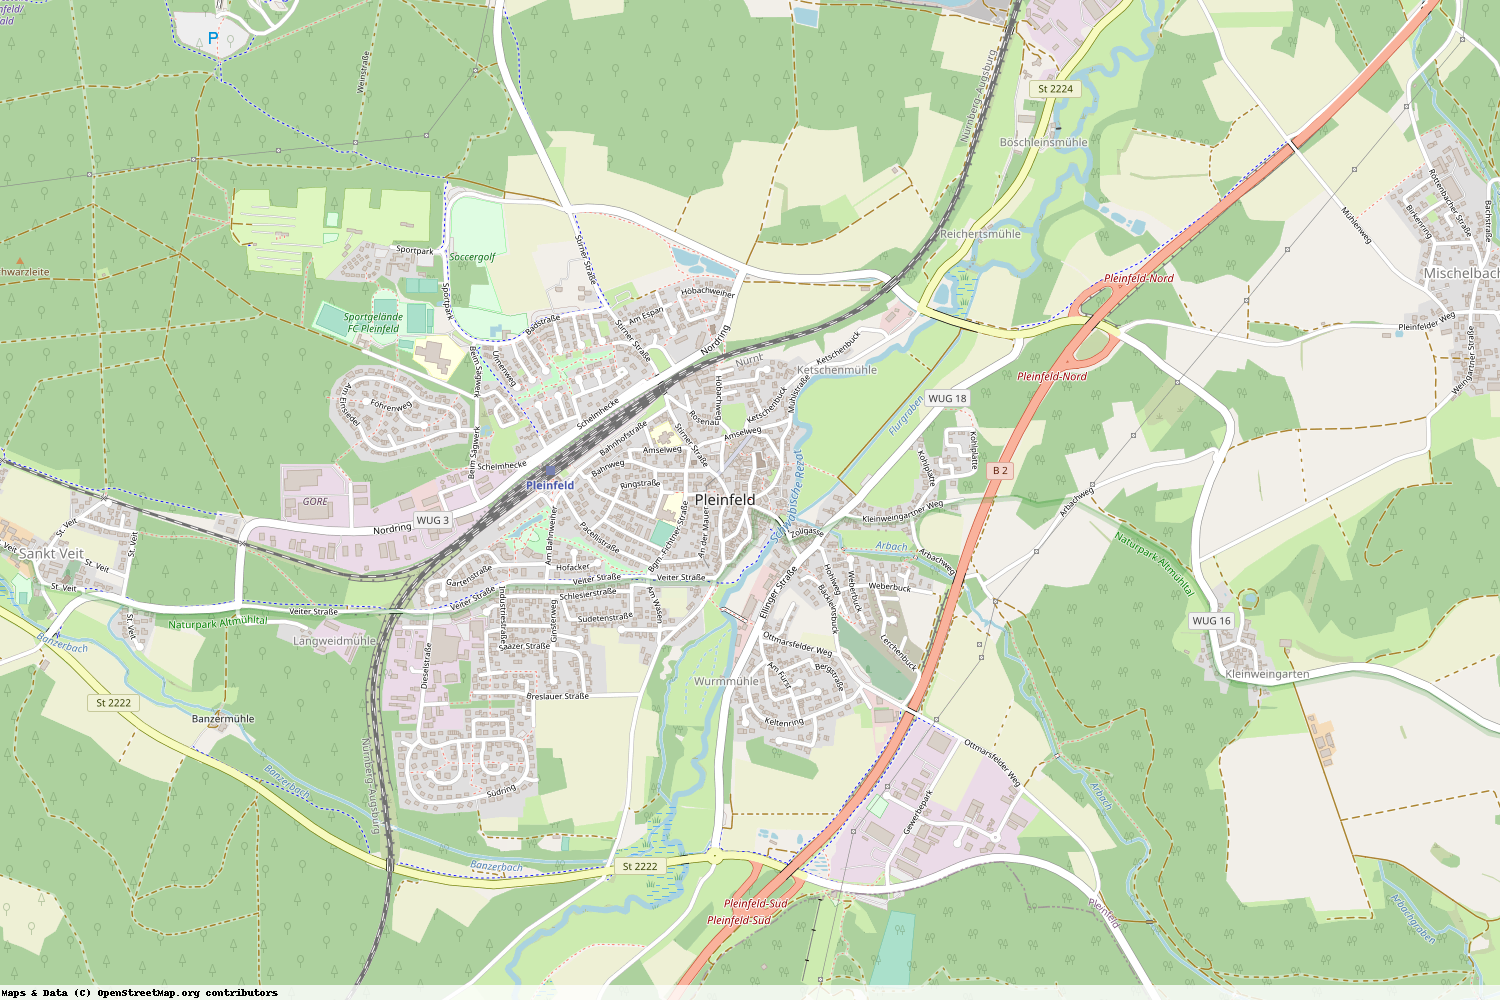 Ist gerade Stromausfall in Bayern - Weißenburg-Gunzenhausen - Pleinfeld?